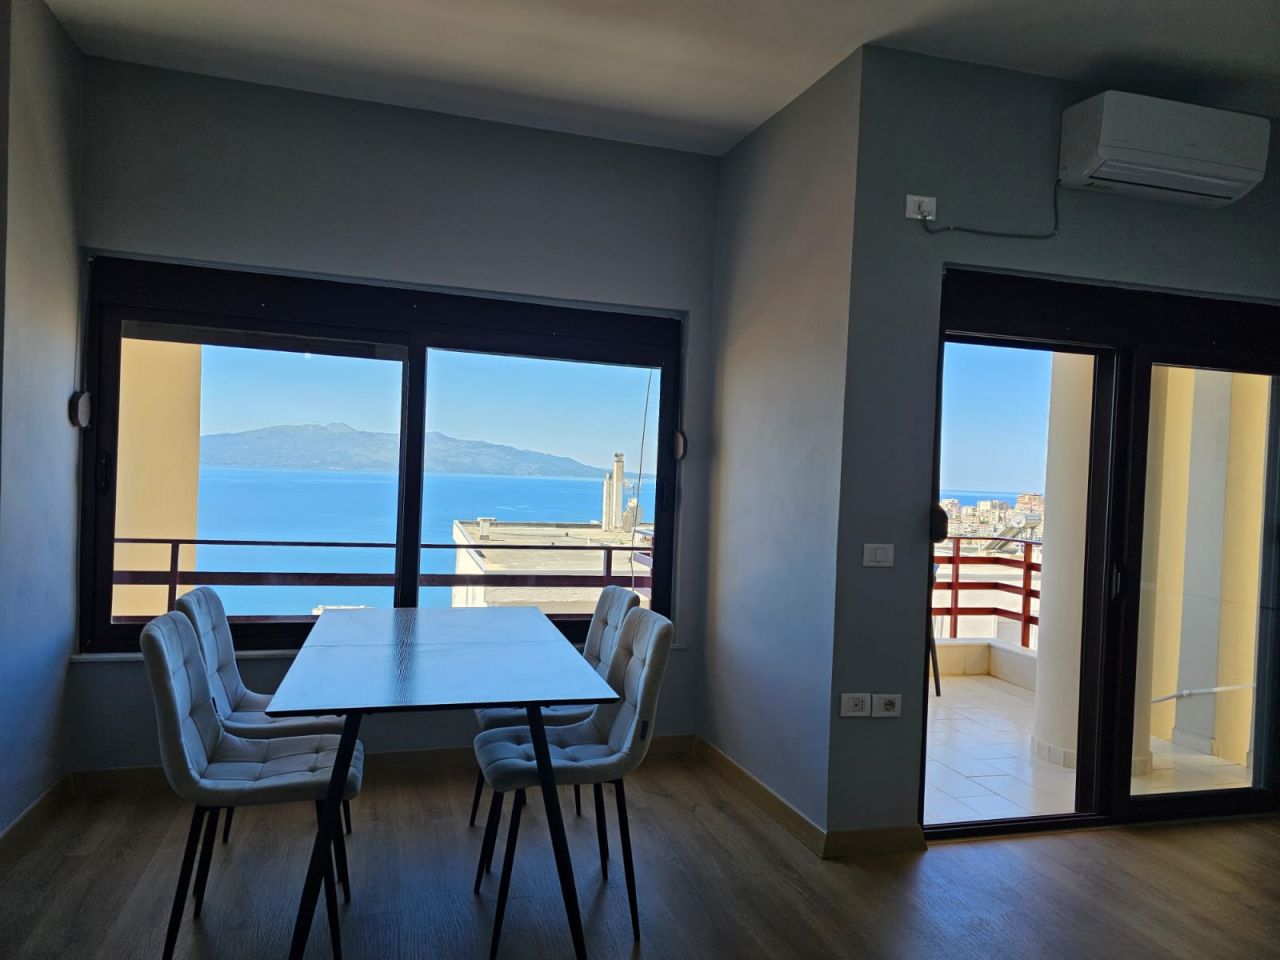 Bellissimo Appartamento In Vendita A Saranda Albania Con Una Meravigliosa Vista Panoramica Sulla Baia Di Saranda A Breve Distanza Dal Centro Della Città